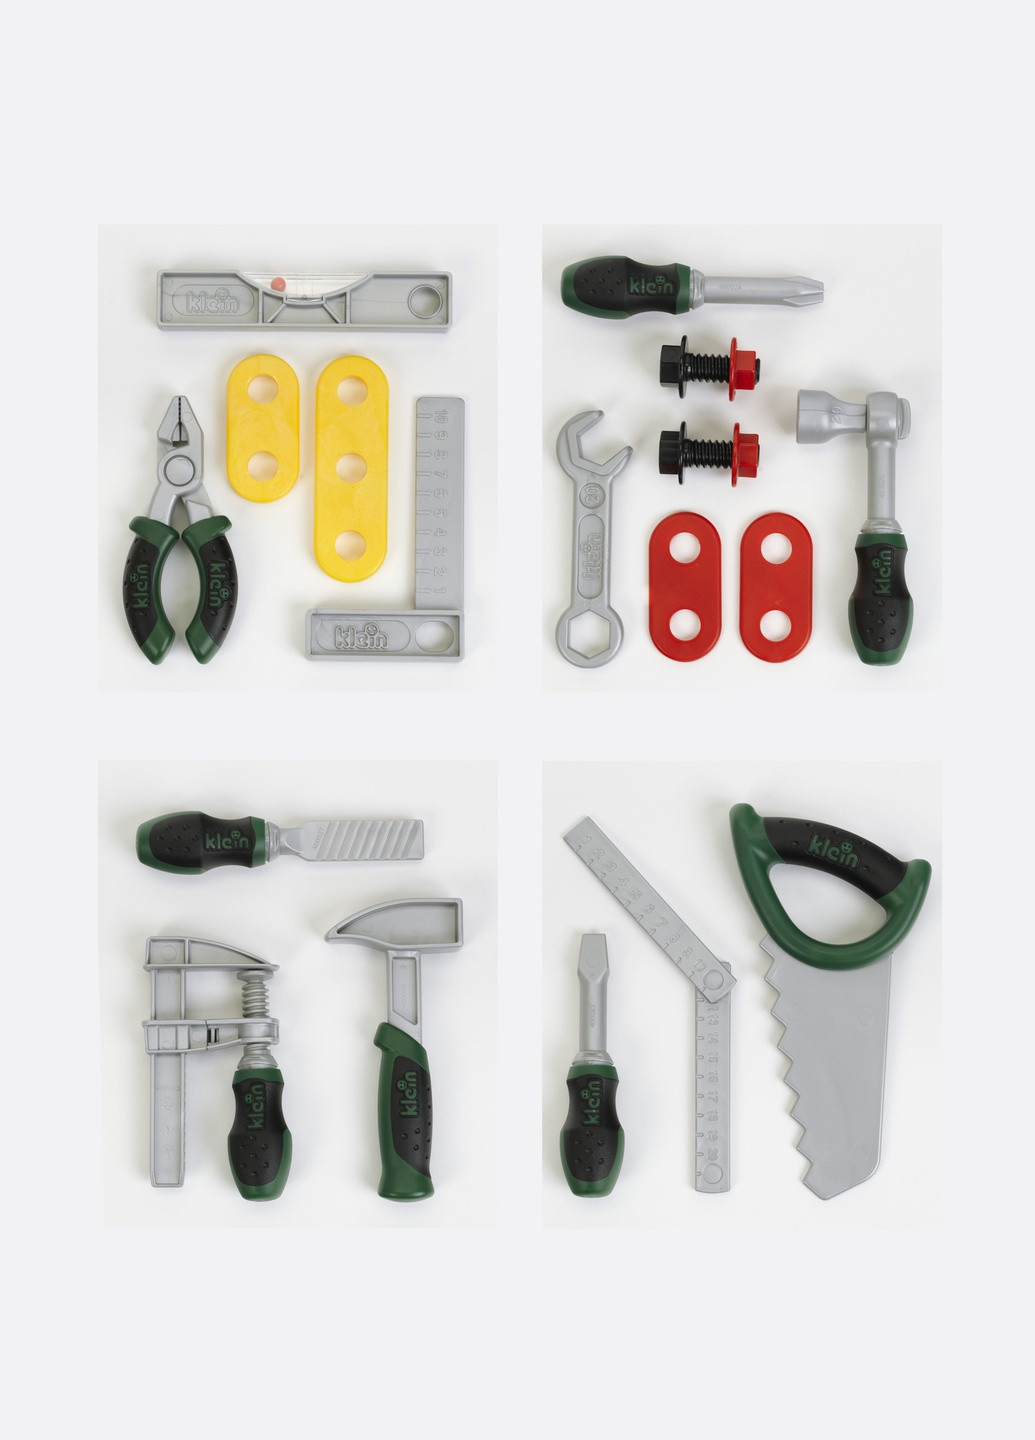 Игрушечный набор инструментов Klein 1 из 4х секций 8007A (9016) Bosch (263433476)